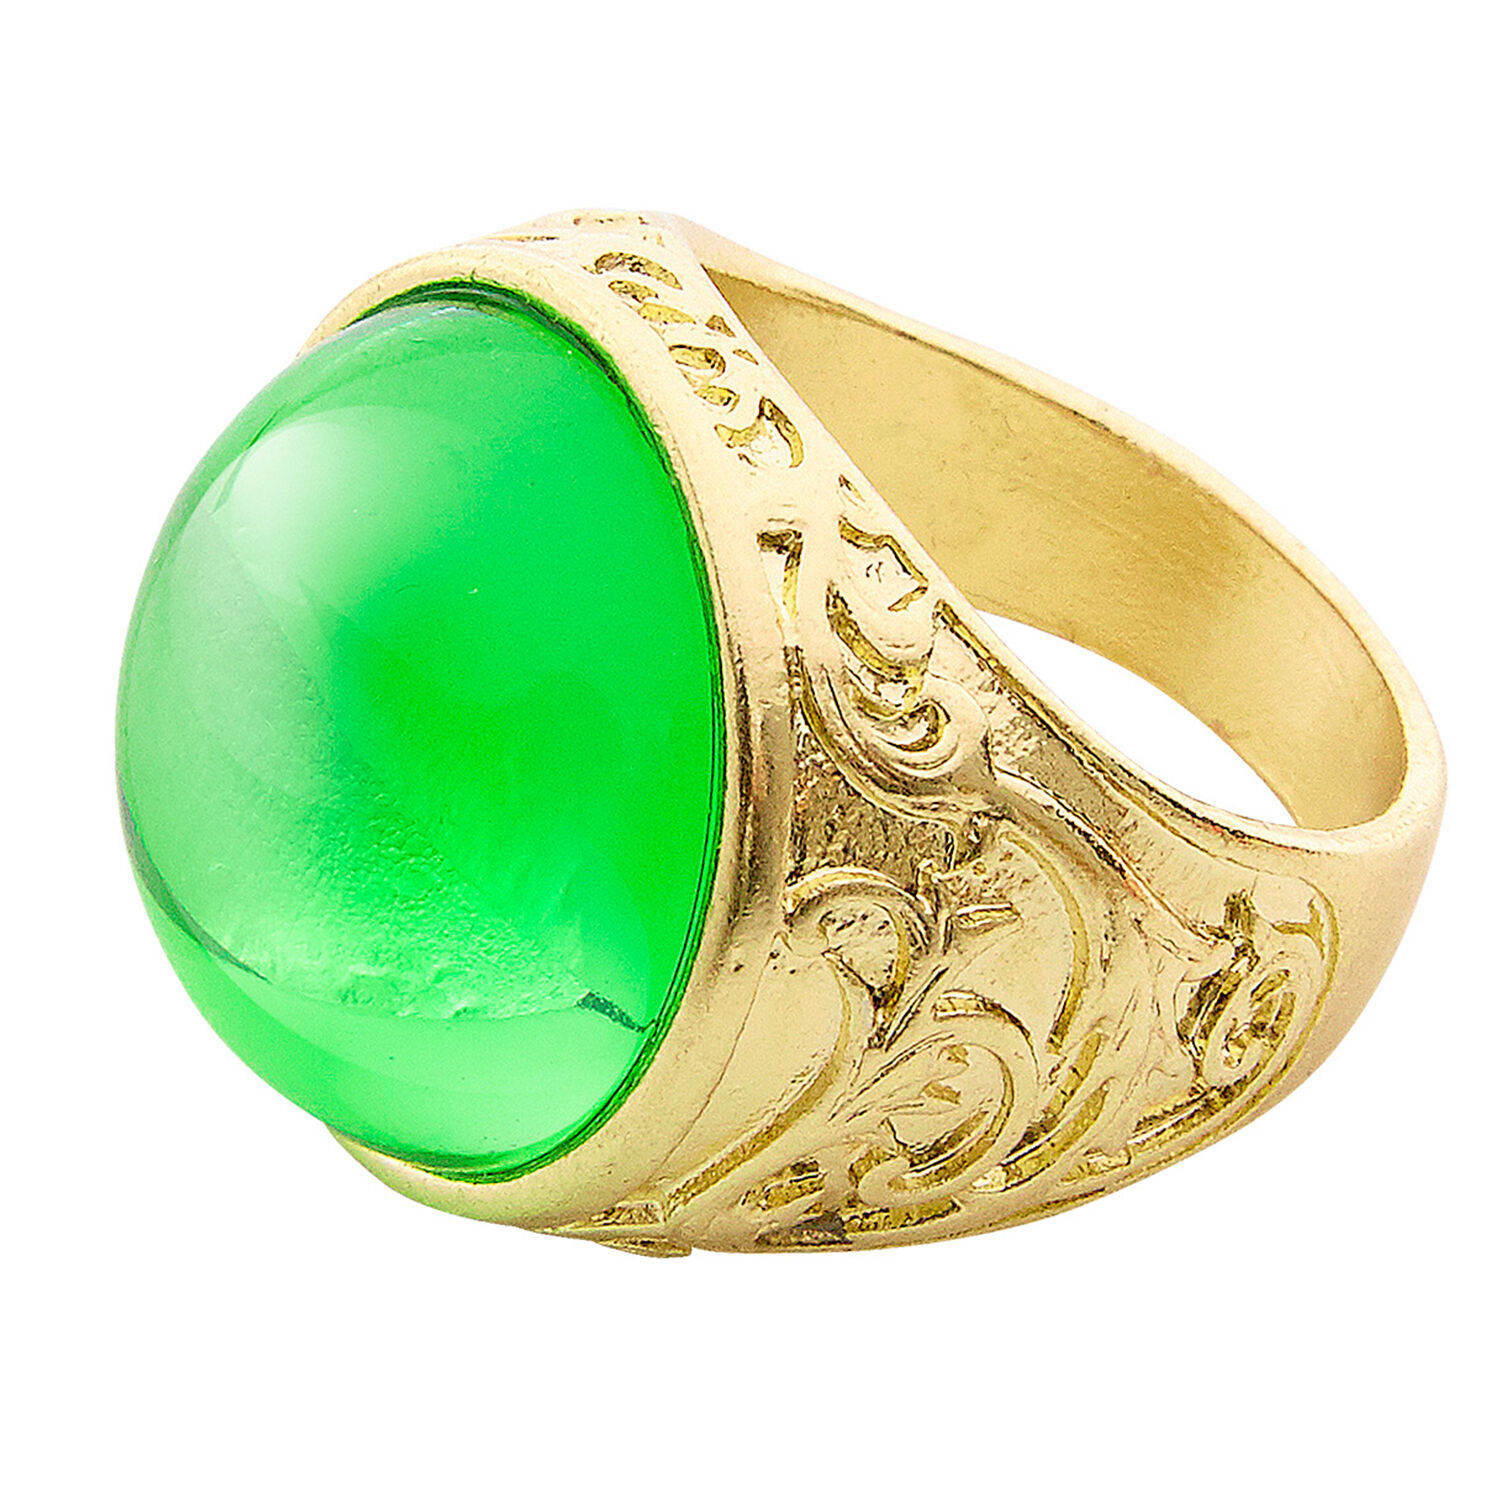 NEU Schöner goldener Ring mit grünem Stein für Pirat, Mittelalter & Co., Einheitsgröße